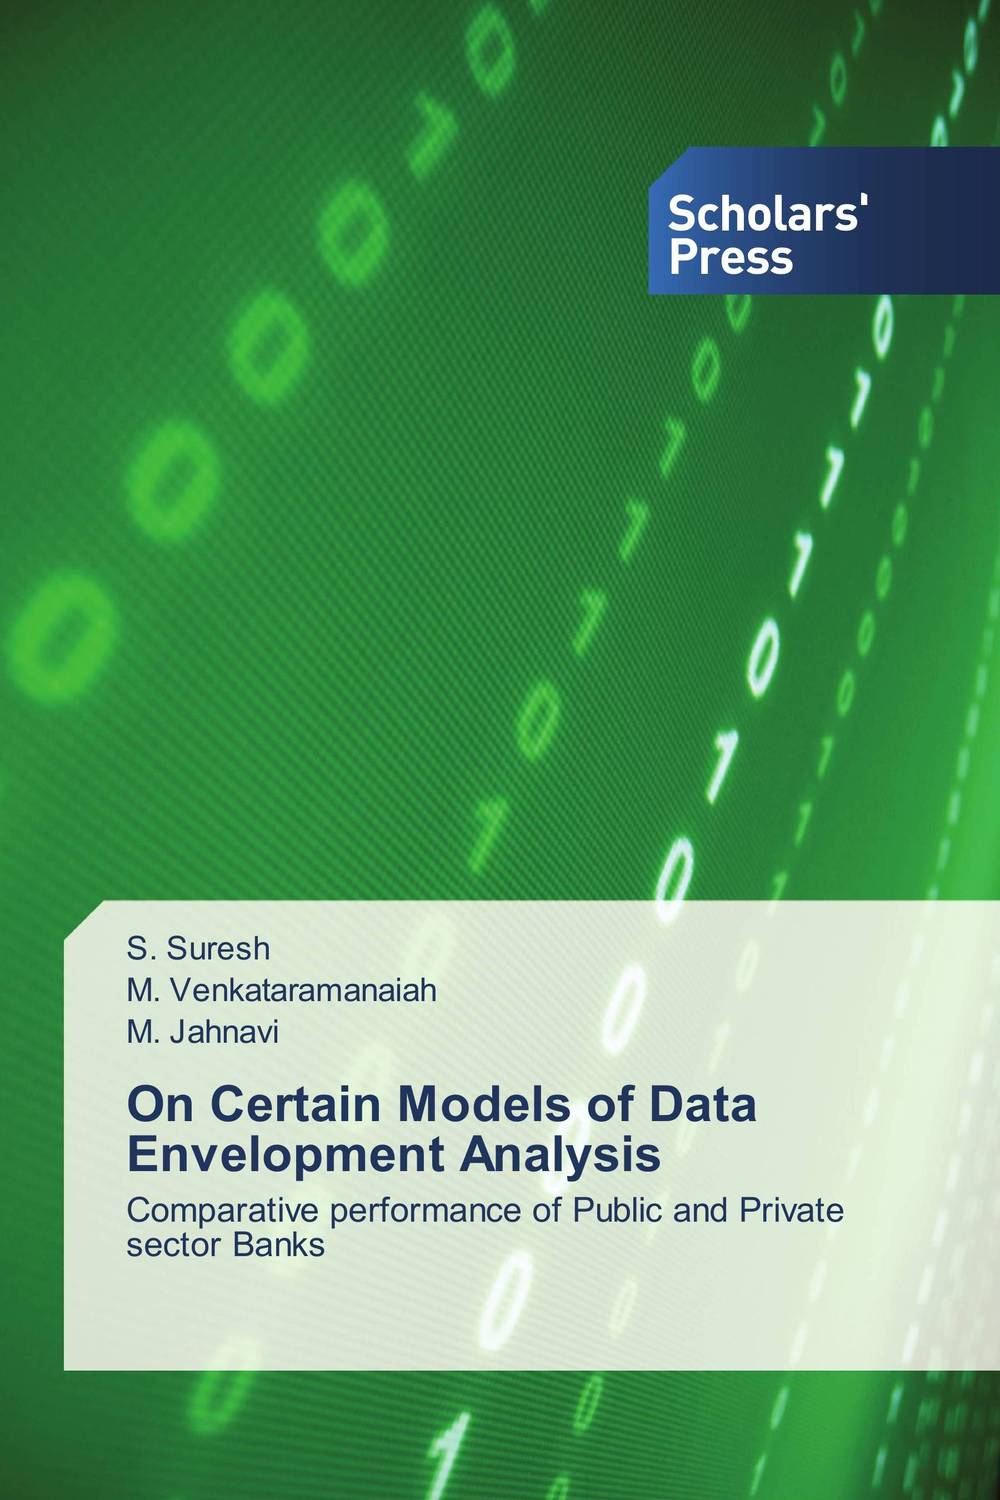 On Certain Models of Data Envelopment Analysis